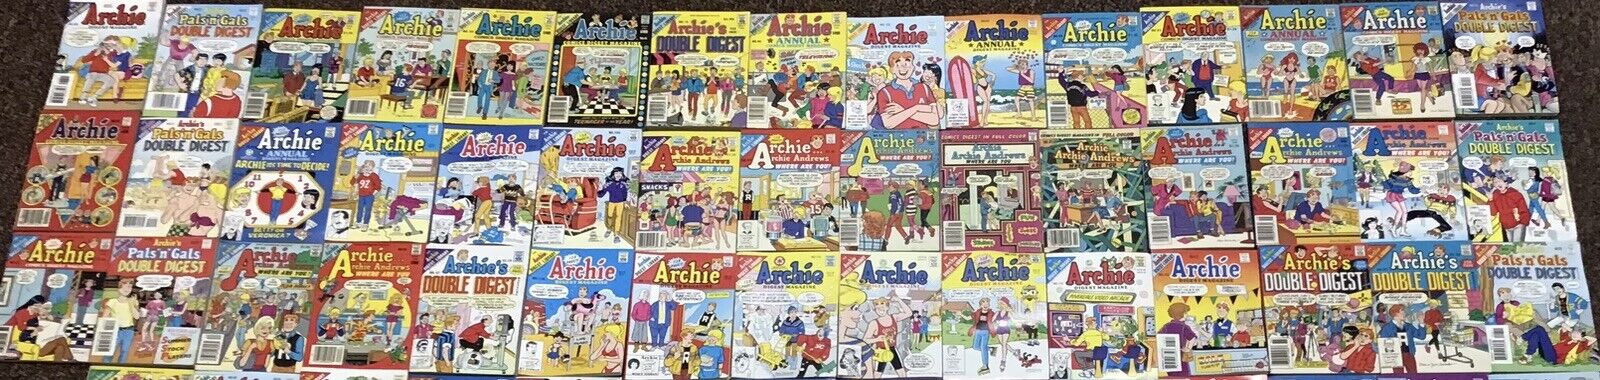 Archie Comics - Archie Digests - Lot Of 130